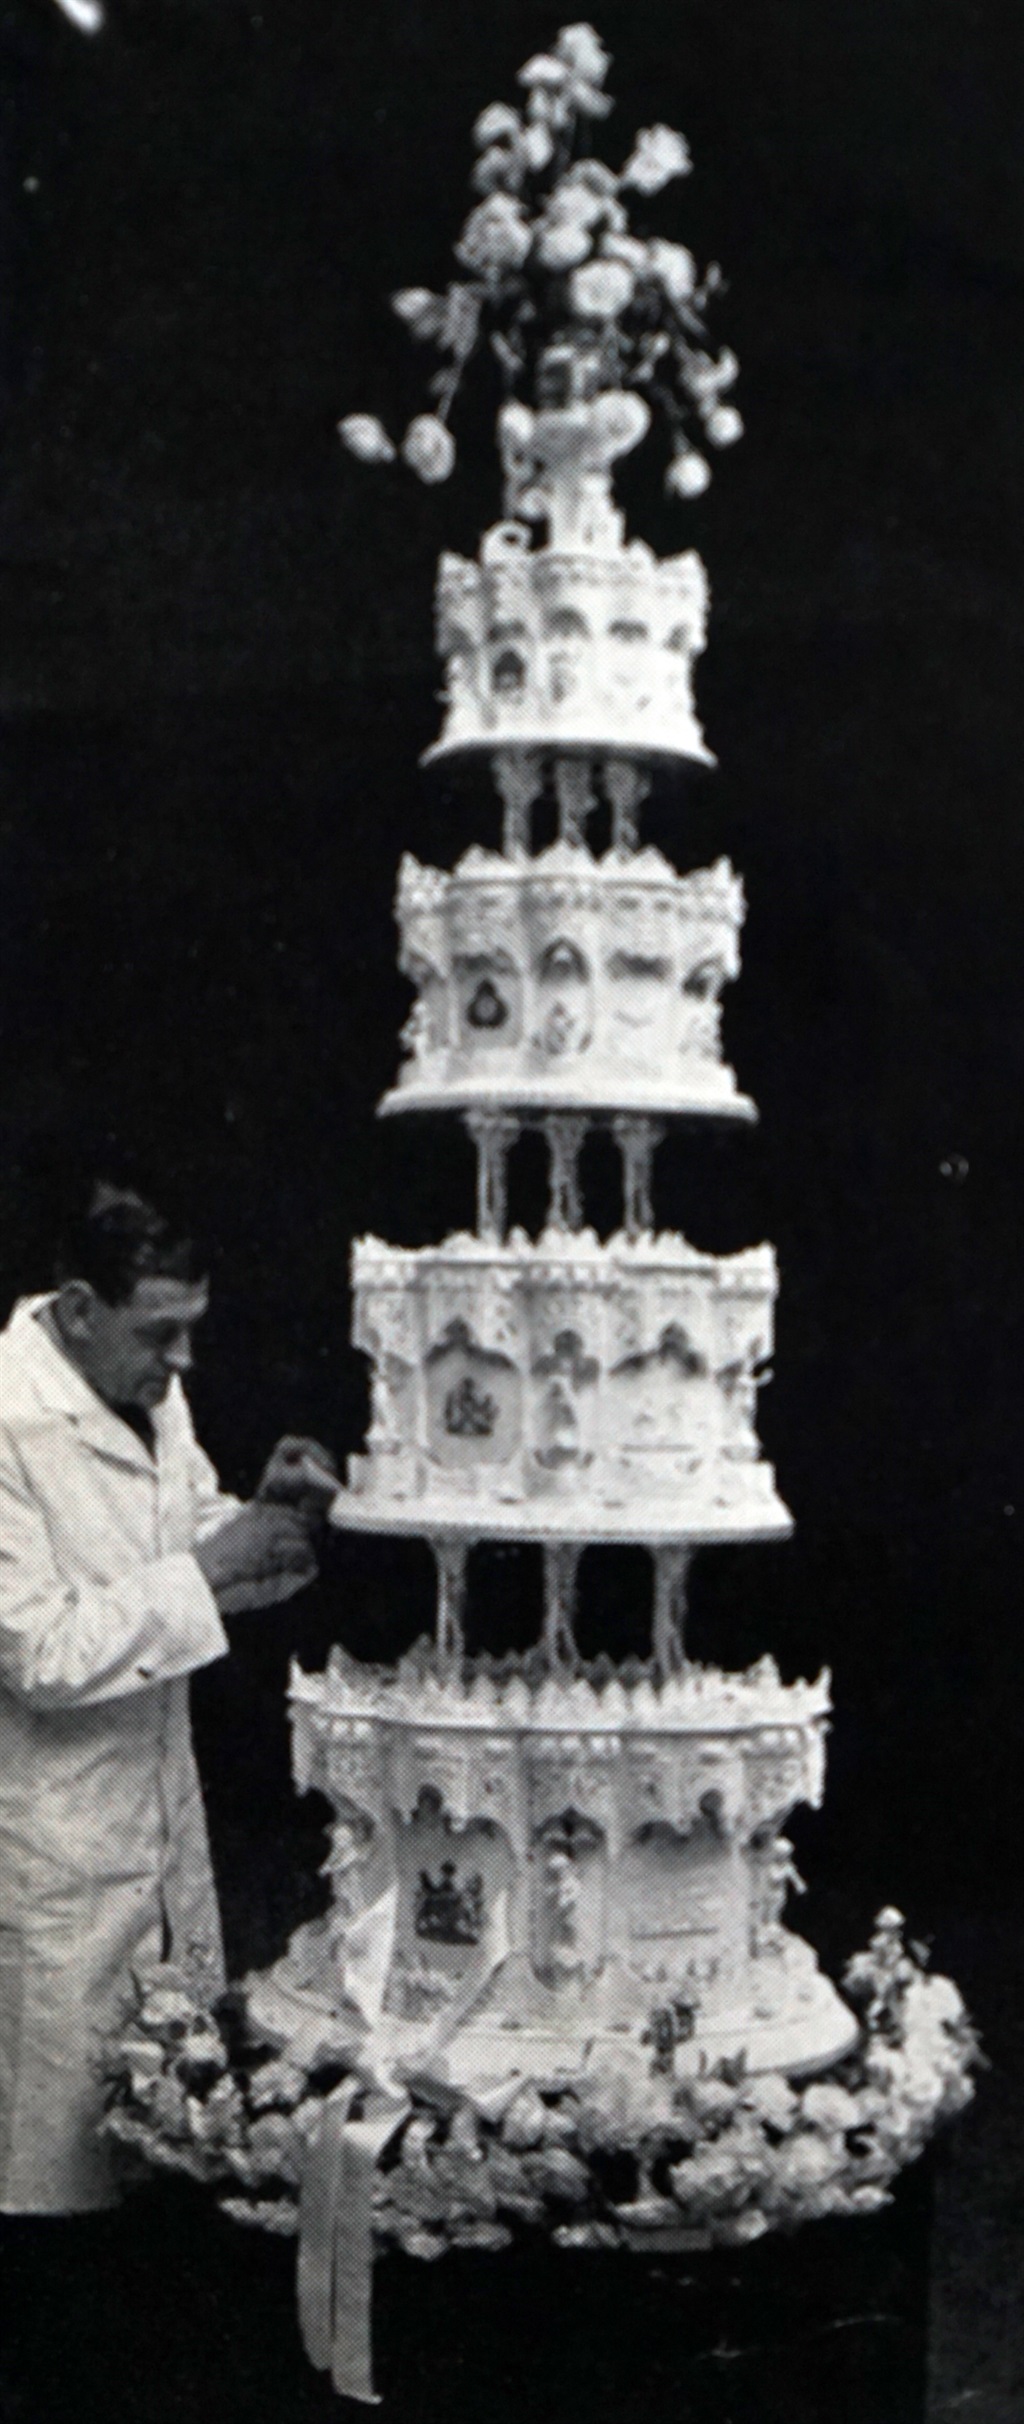 Queen Elizabeth wedding cake